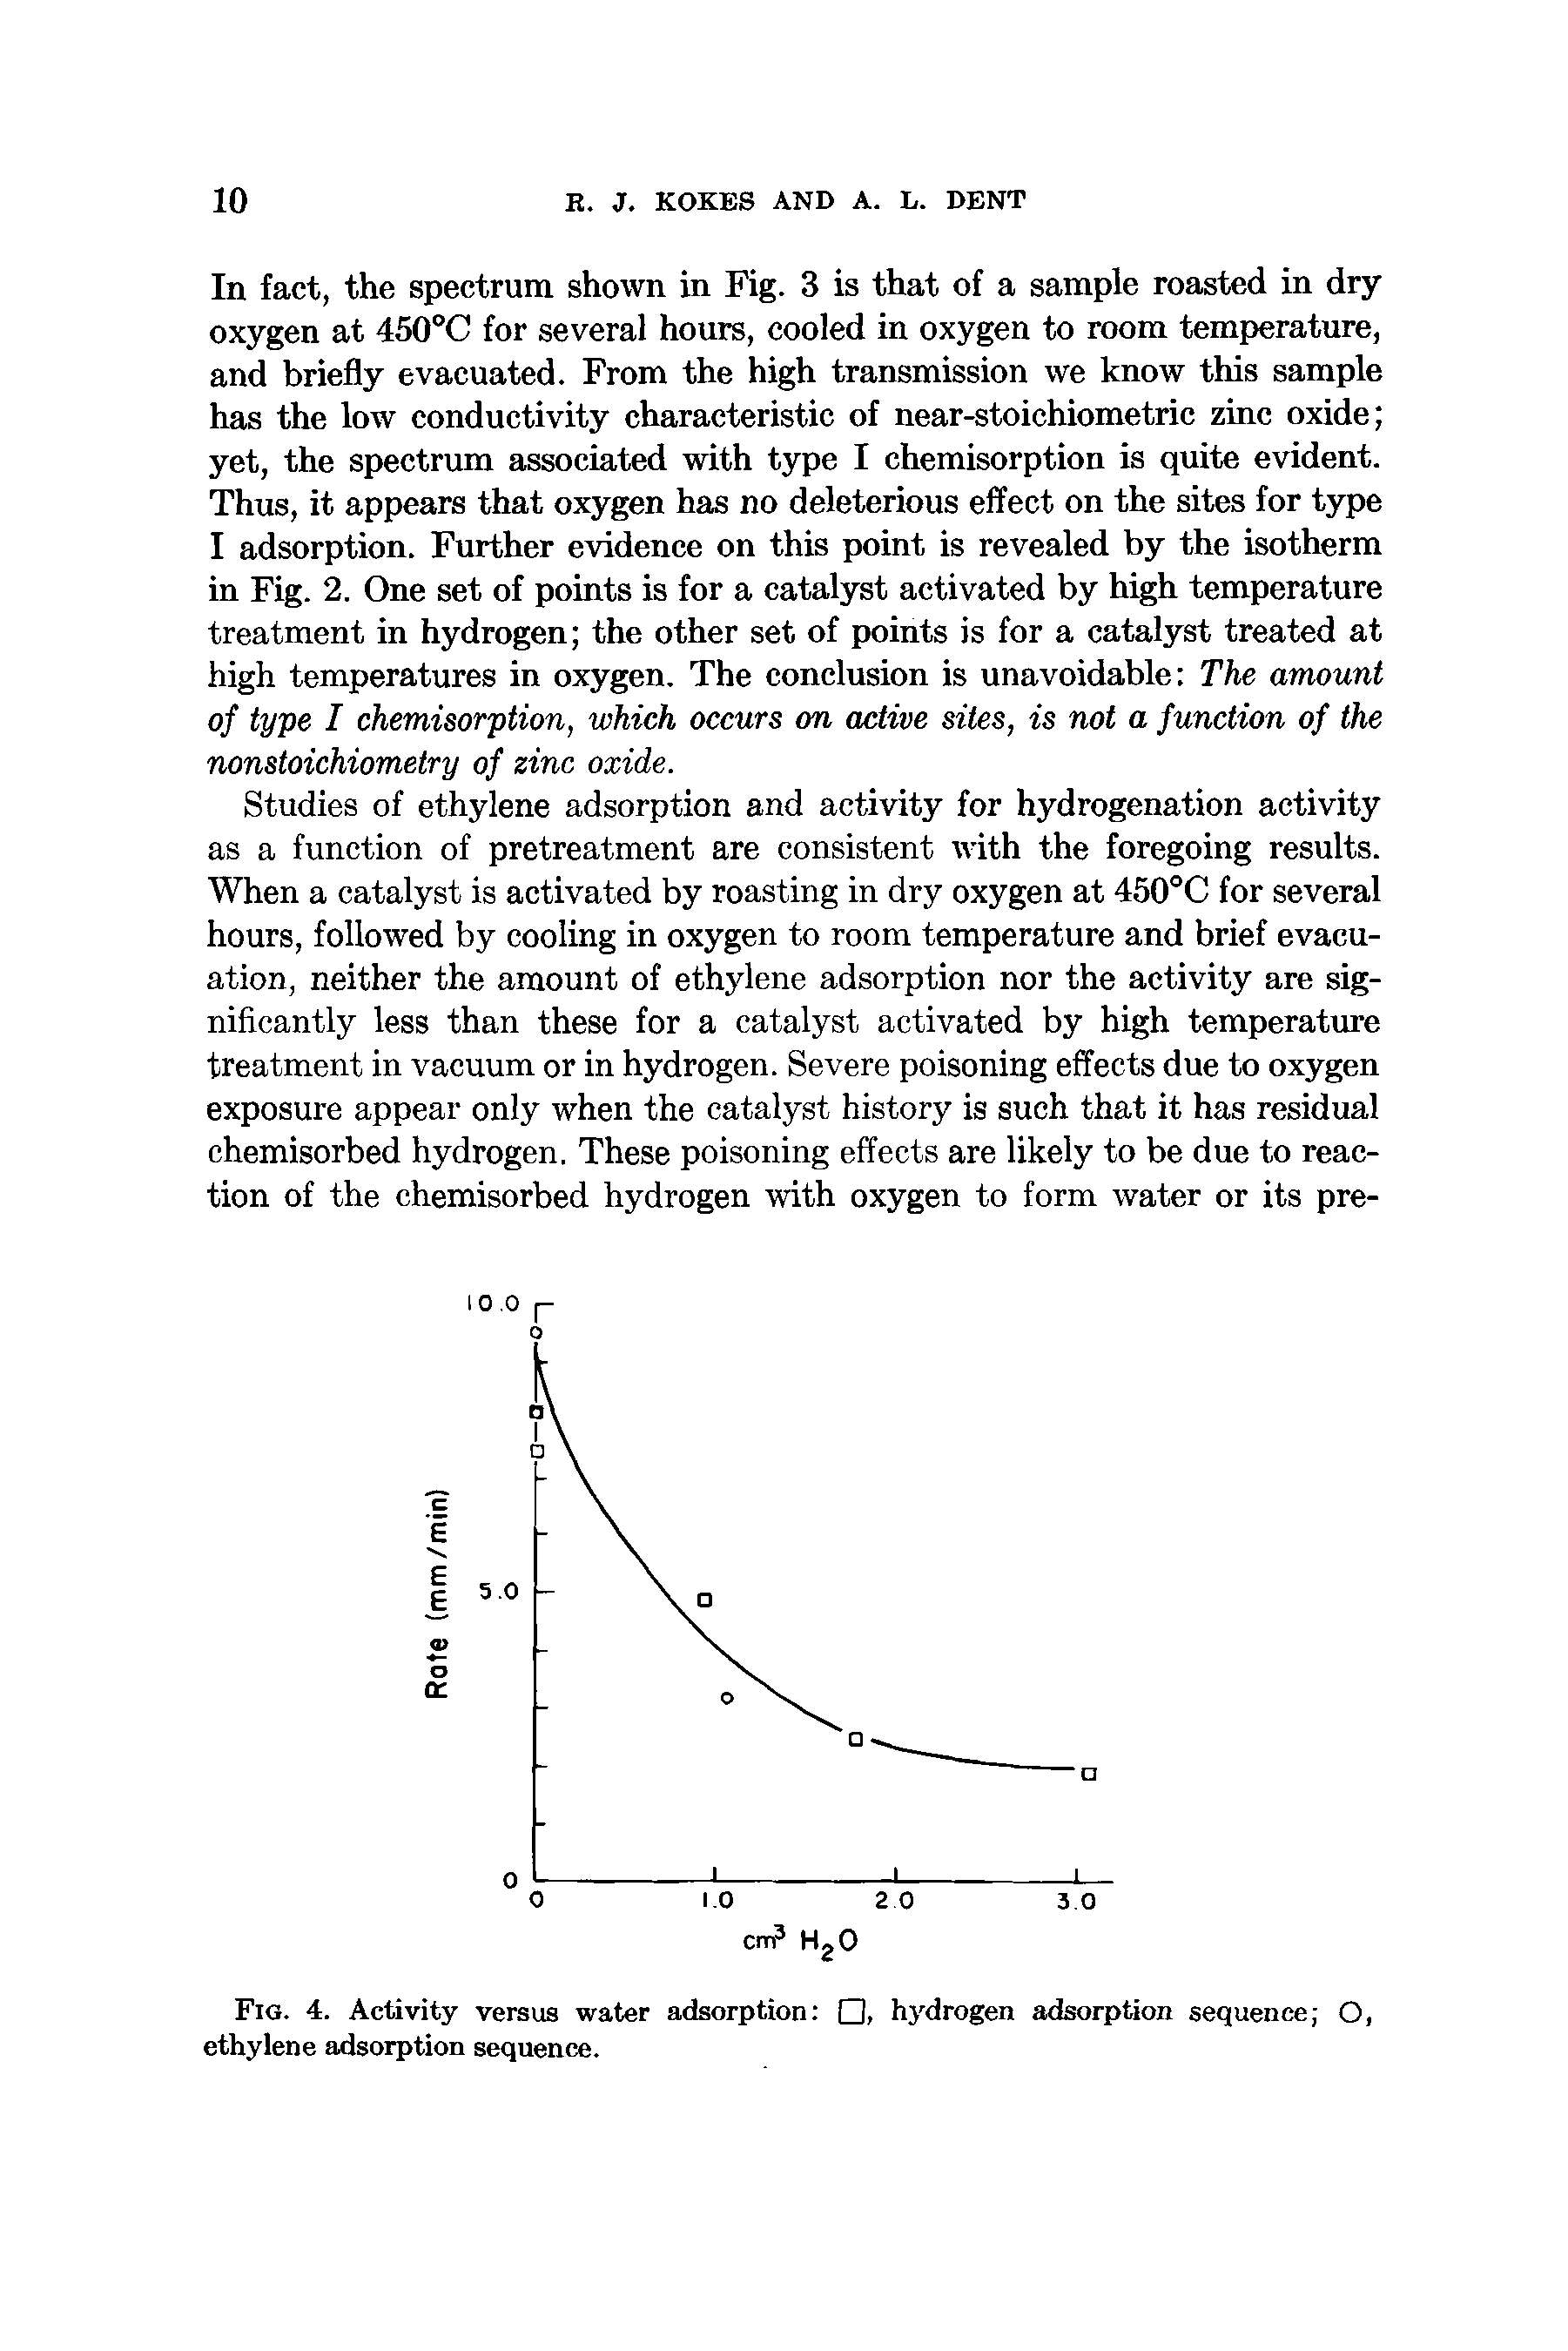 Fig. 4. Activity versus water adsorption , hydrogen adsorption sequence O, ethylene adsorption sequence.